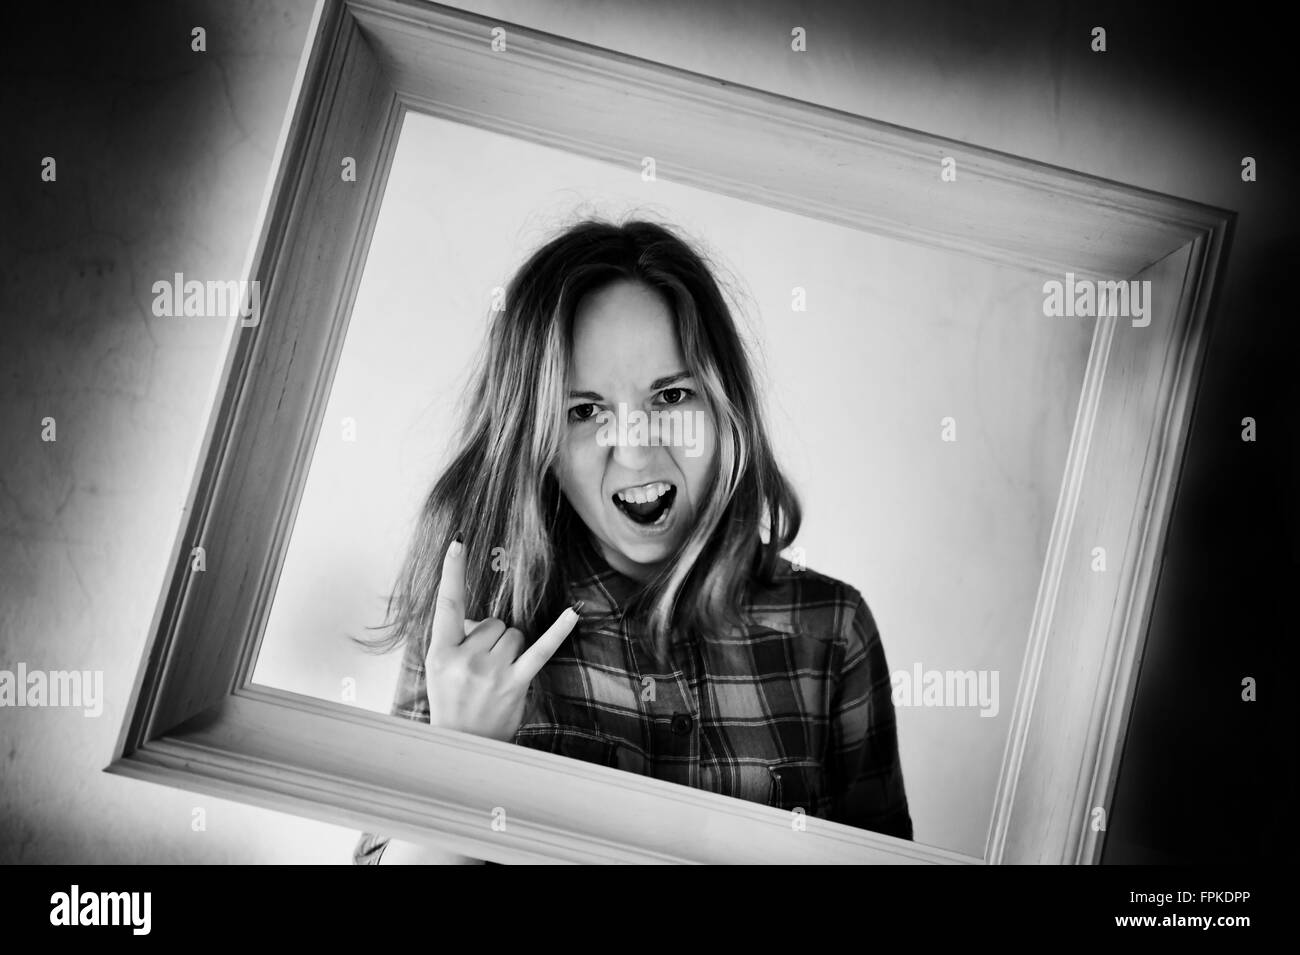 Verrückte Frau posiert in Frame, Erwachsenen Mädchen mit lustigen verrückten Gesicht und Rock'n'Roll Handgeste Hörner, fotografiert in einem Holzrahmen Stockfoto